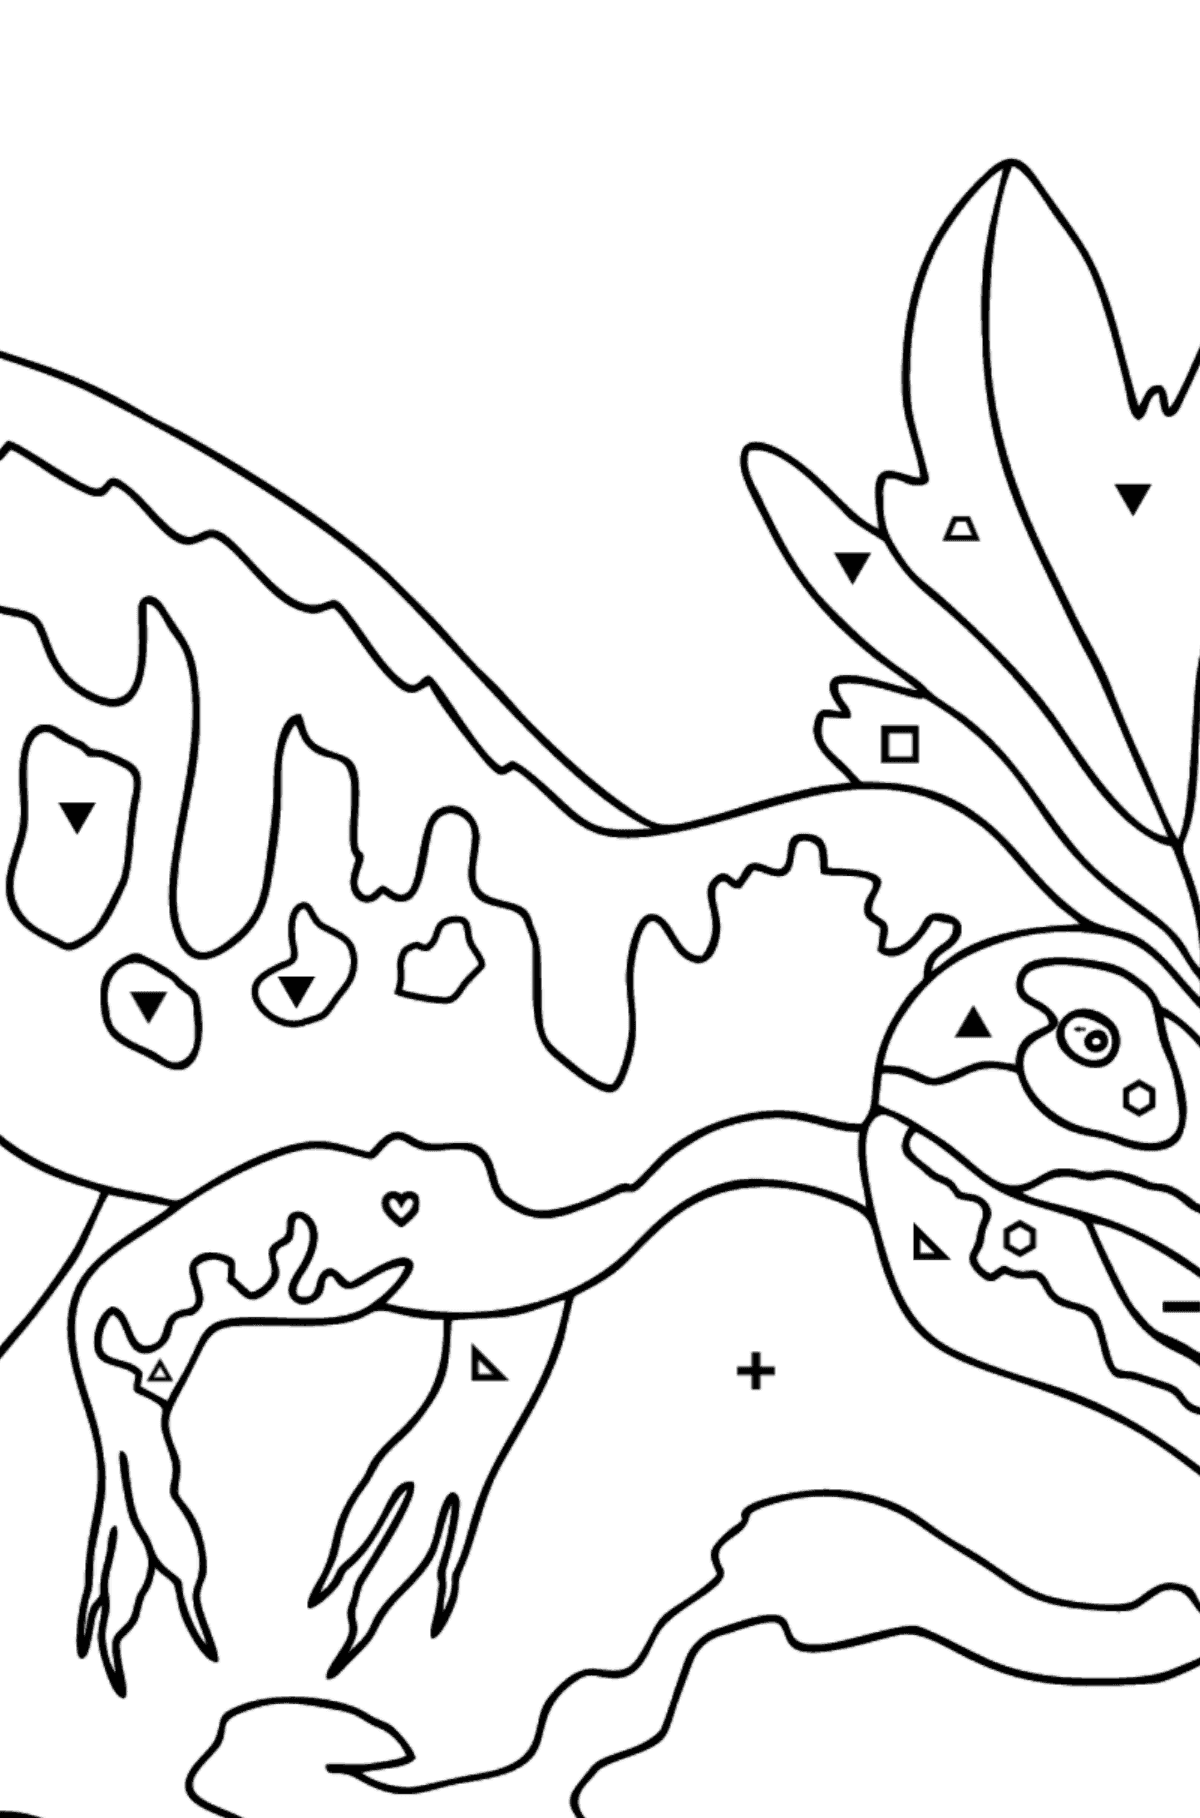 Dibujo para colorear de alosaurio (difícil) - Colorear por Símbolos para Niños